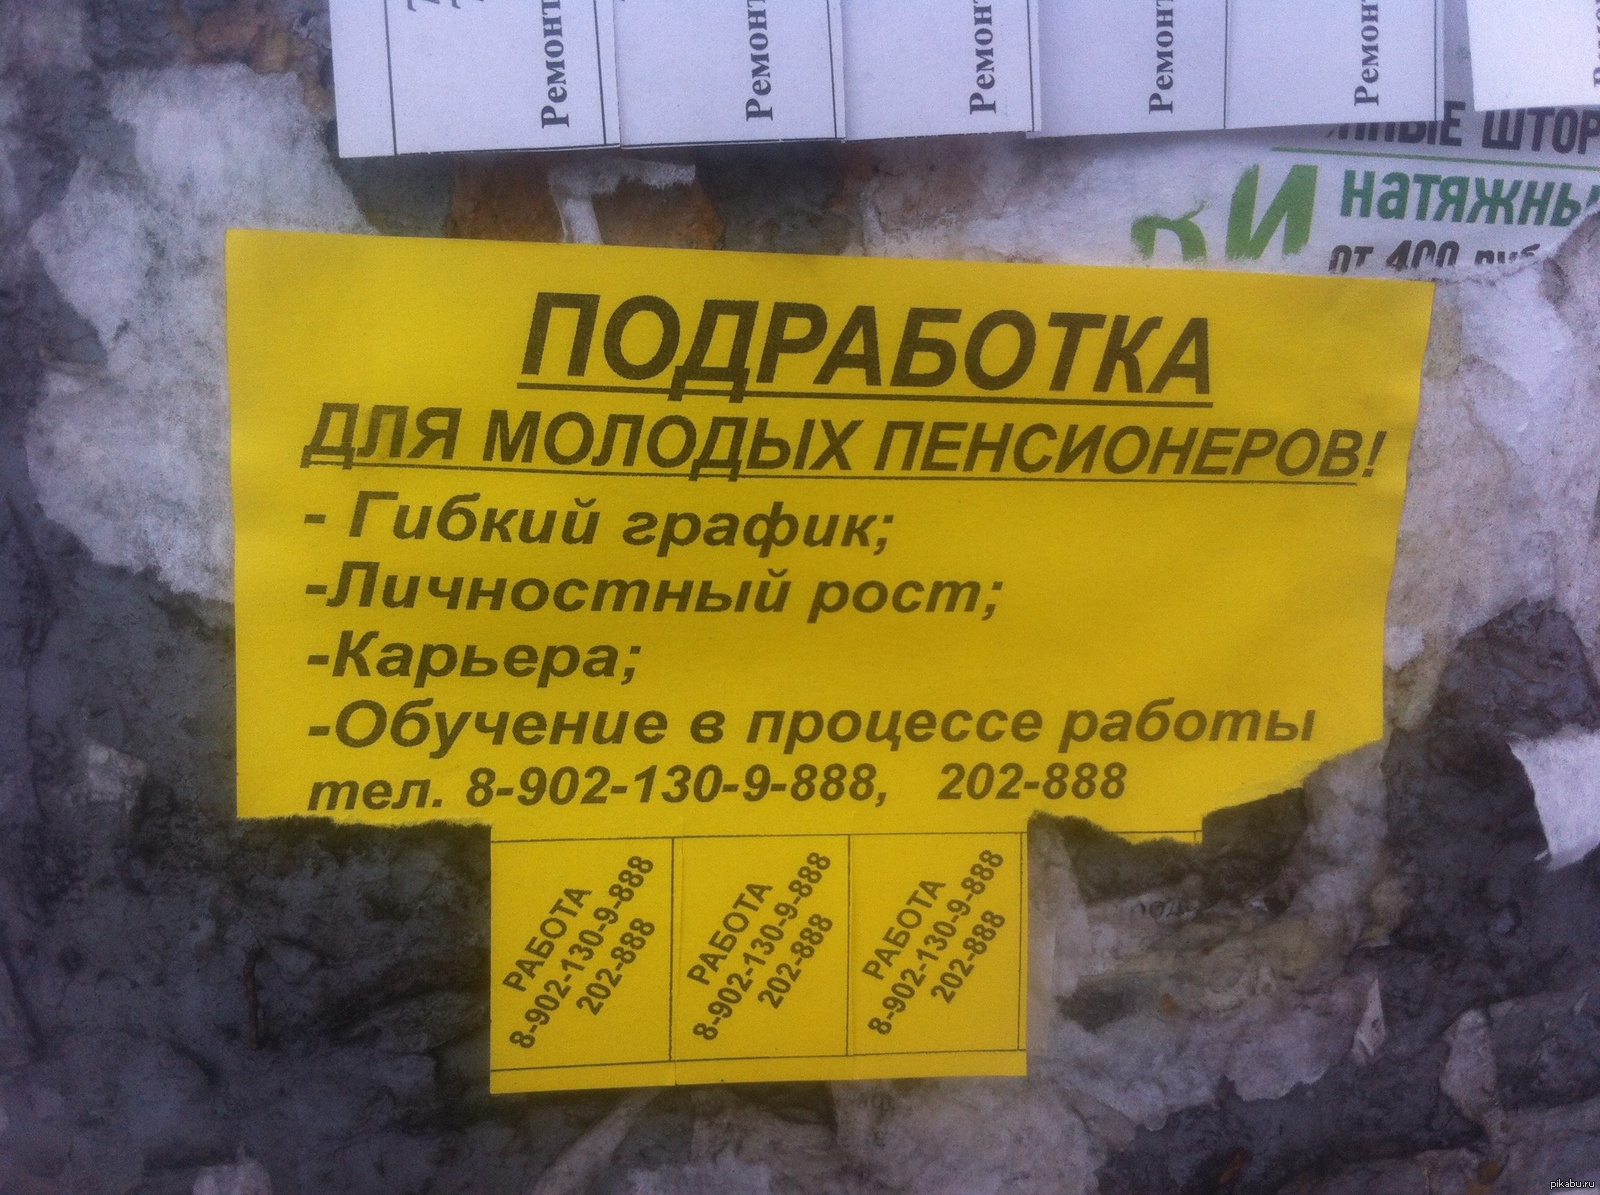 Работа для пенсионеров без опыта в москве